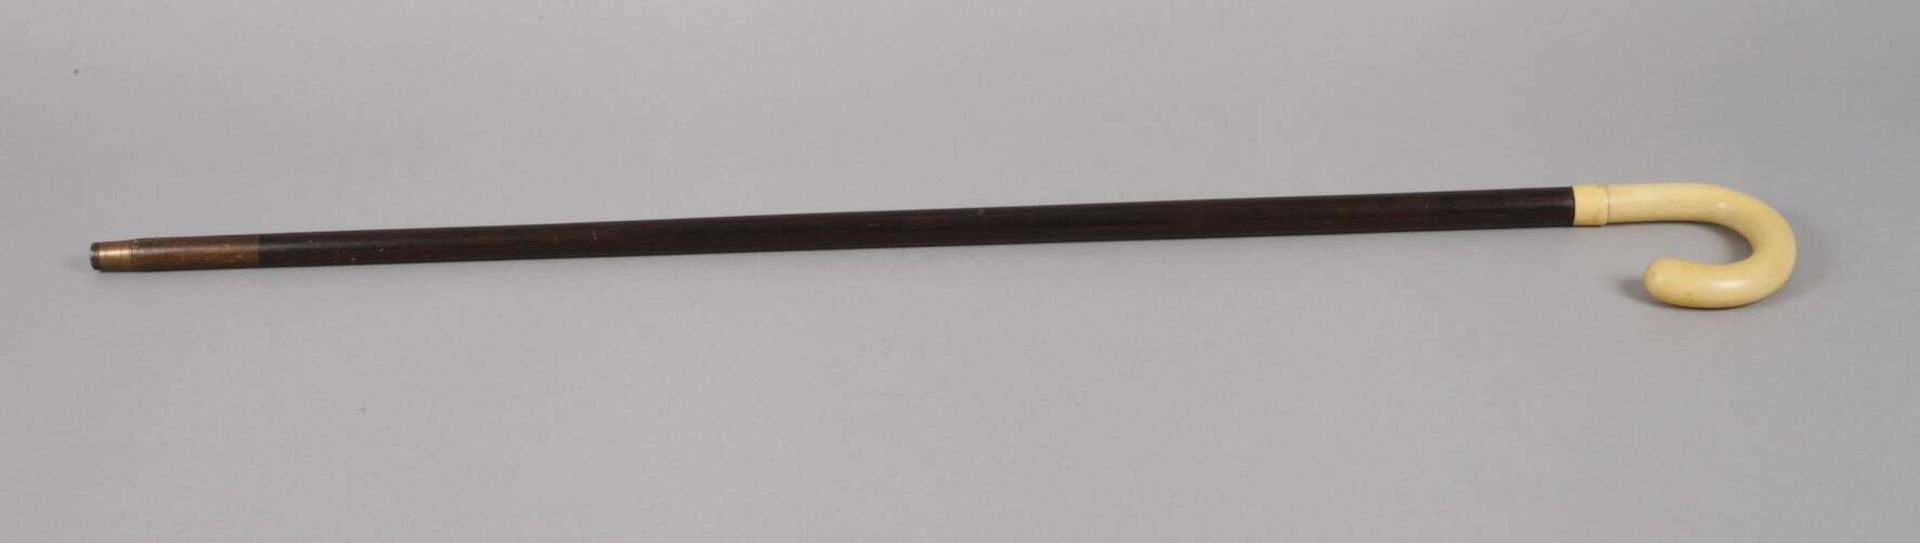 Spazierstock Beinum 1920, geschwungenes Griffstück aus Bein mit angesetzter Manschette, Schuss aus - Bild 2 aus 3